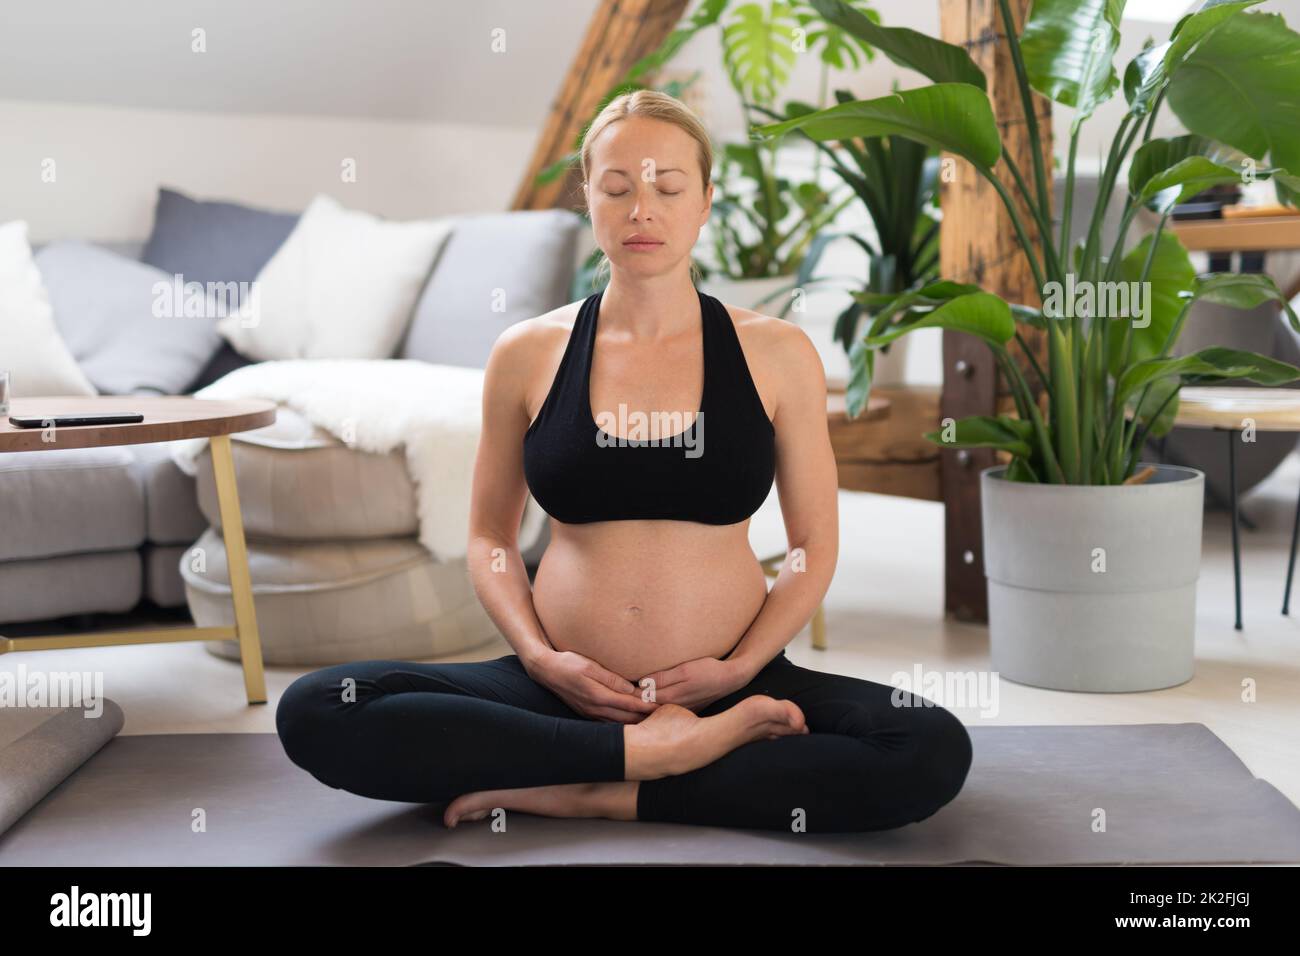 Junge, schöne, schwangere Frau, die Yoga trainiert, ihren Bauch streichelt. Junge, fröhlich, erwartungsvoll, entspannt, denkt an ihr Baby und genießt ihr zukünftiges Leben. Mutterschaft, Schwangerschaft, Yoga-Konzept. Stockfoto